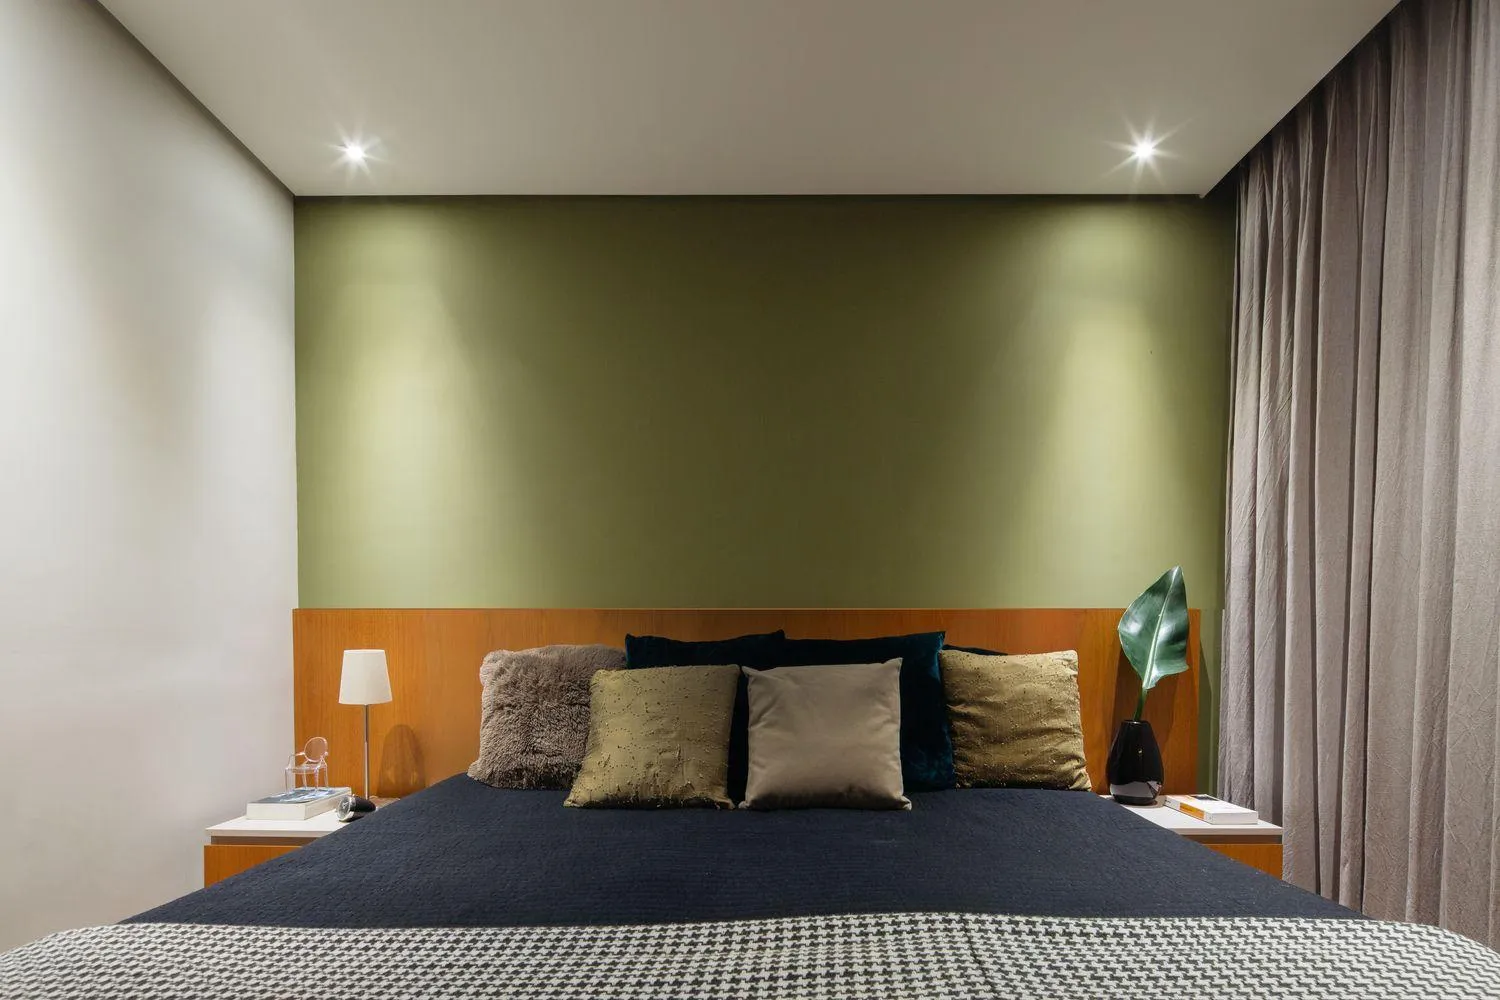 Оливкові стіни у вітальні додають затишку / Фото Archdaily